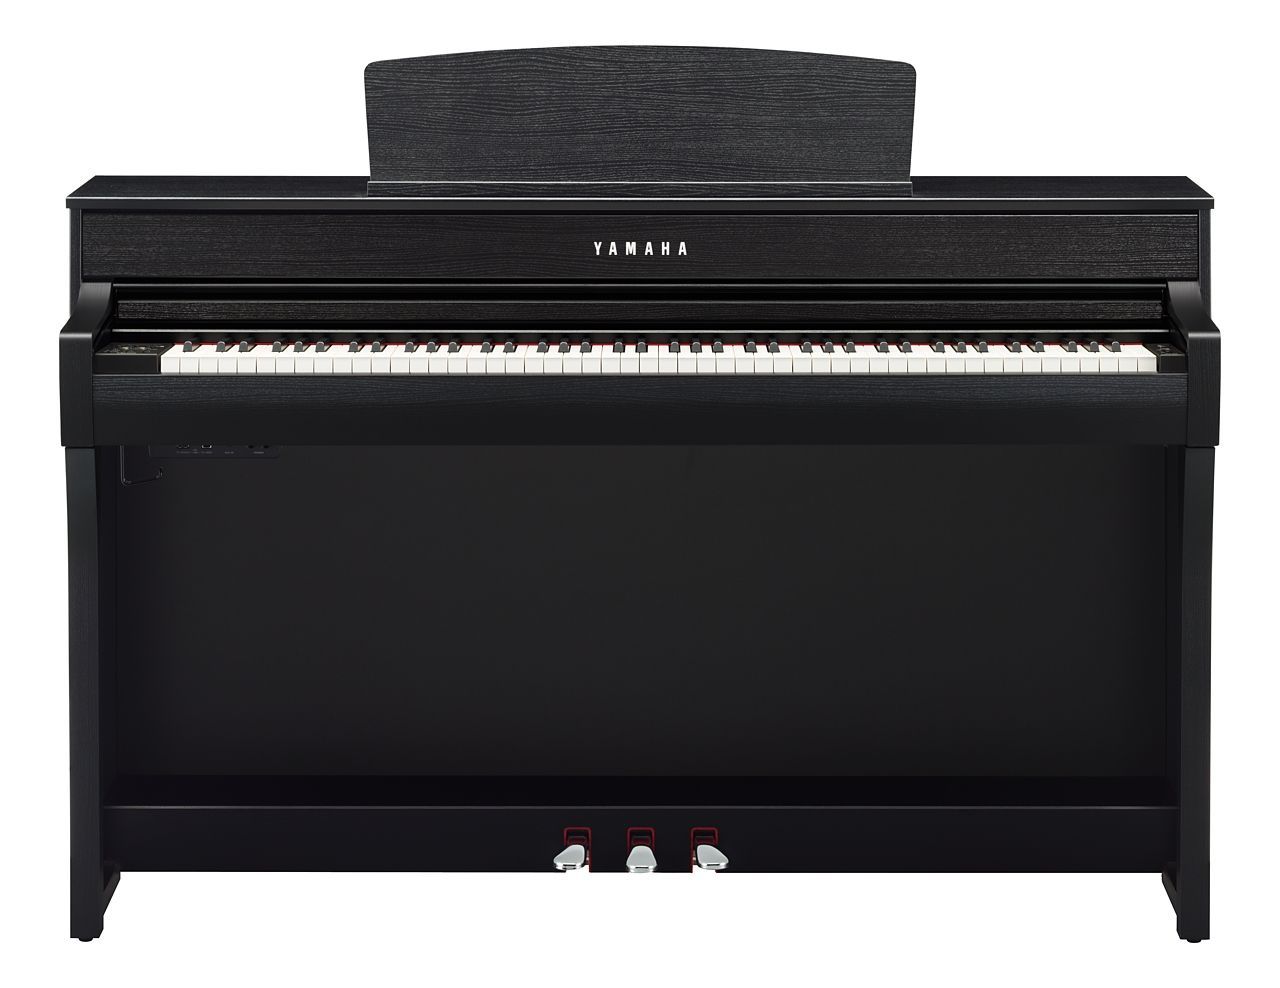 Yamaha CLP-745B Digitalpiano schwarz matt, E-Piano Yamaha 